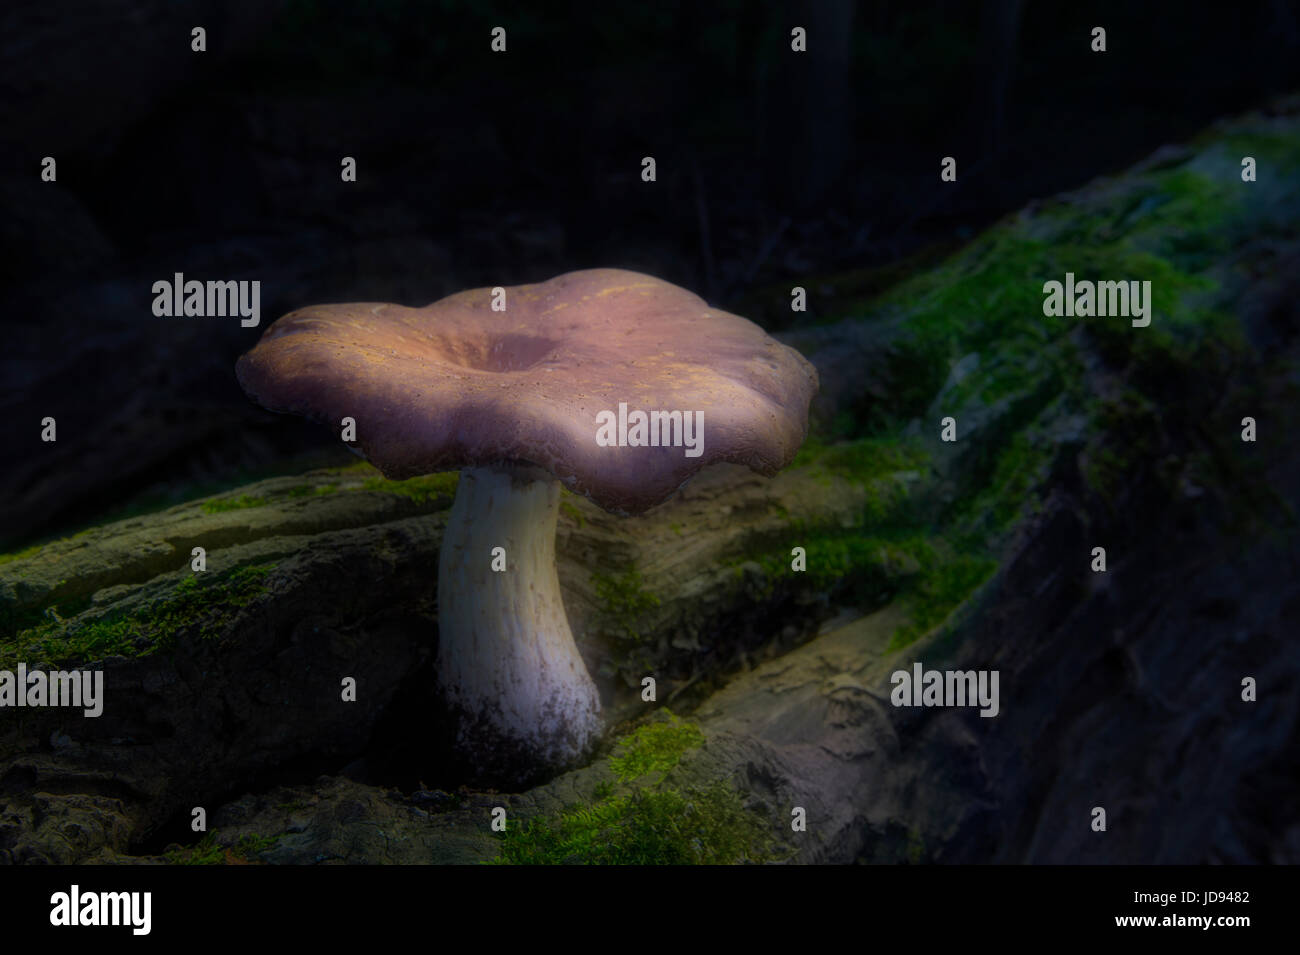 Seta místico solitario sobre caído Mossy Log en el bosque Foto de stock